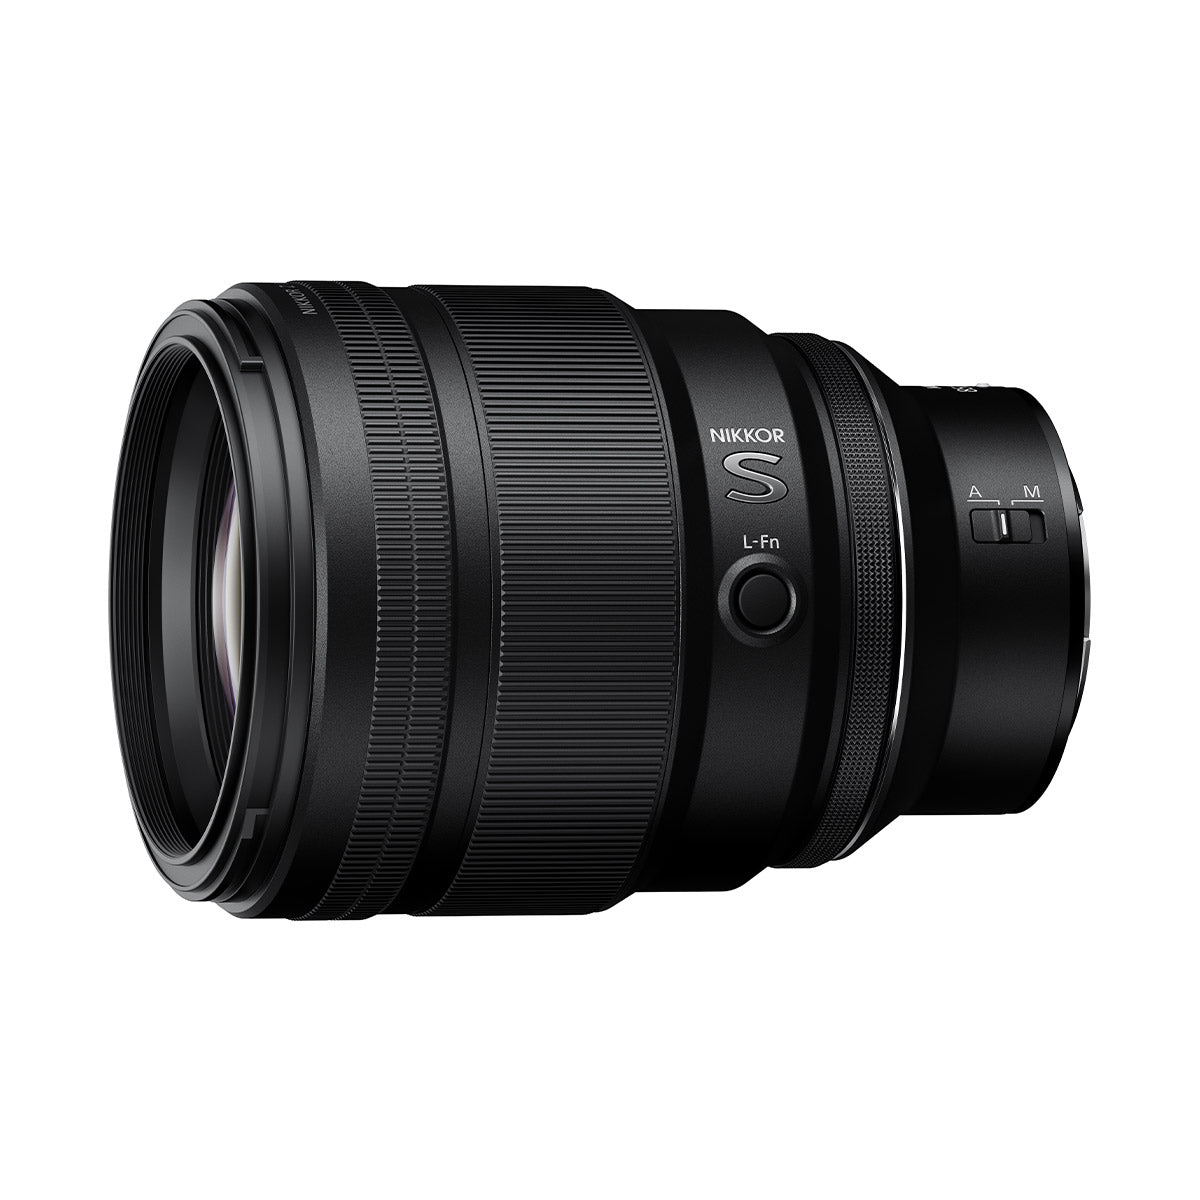 Nikon Z 85mm f/1.2 S Lens